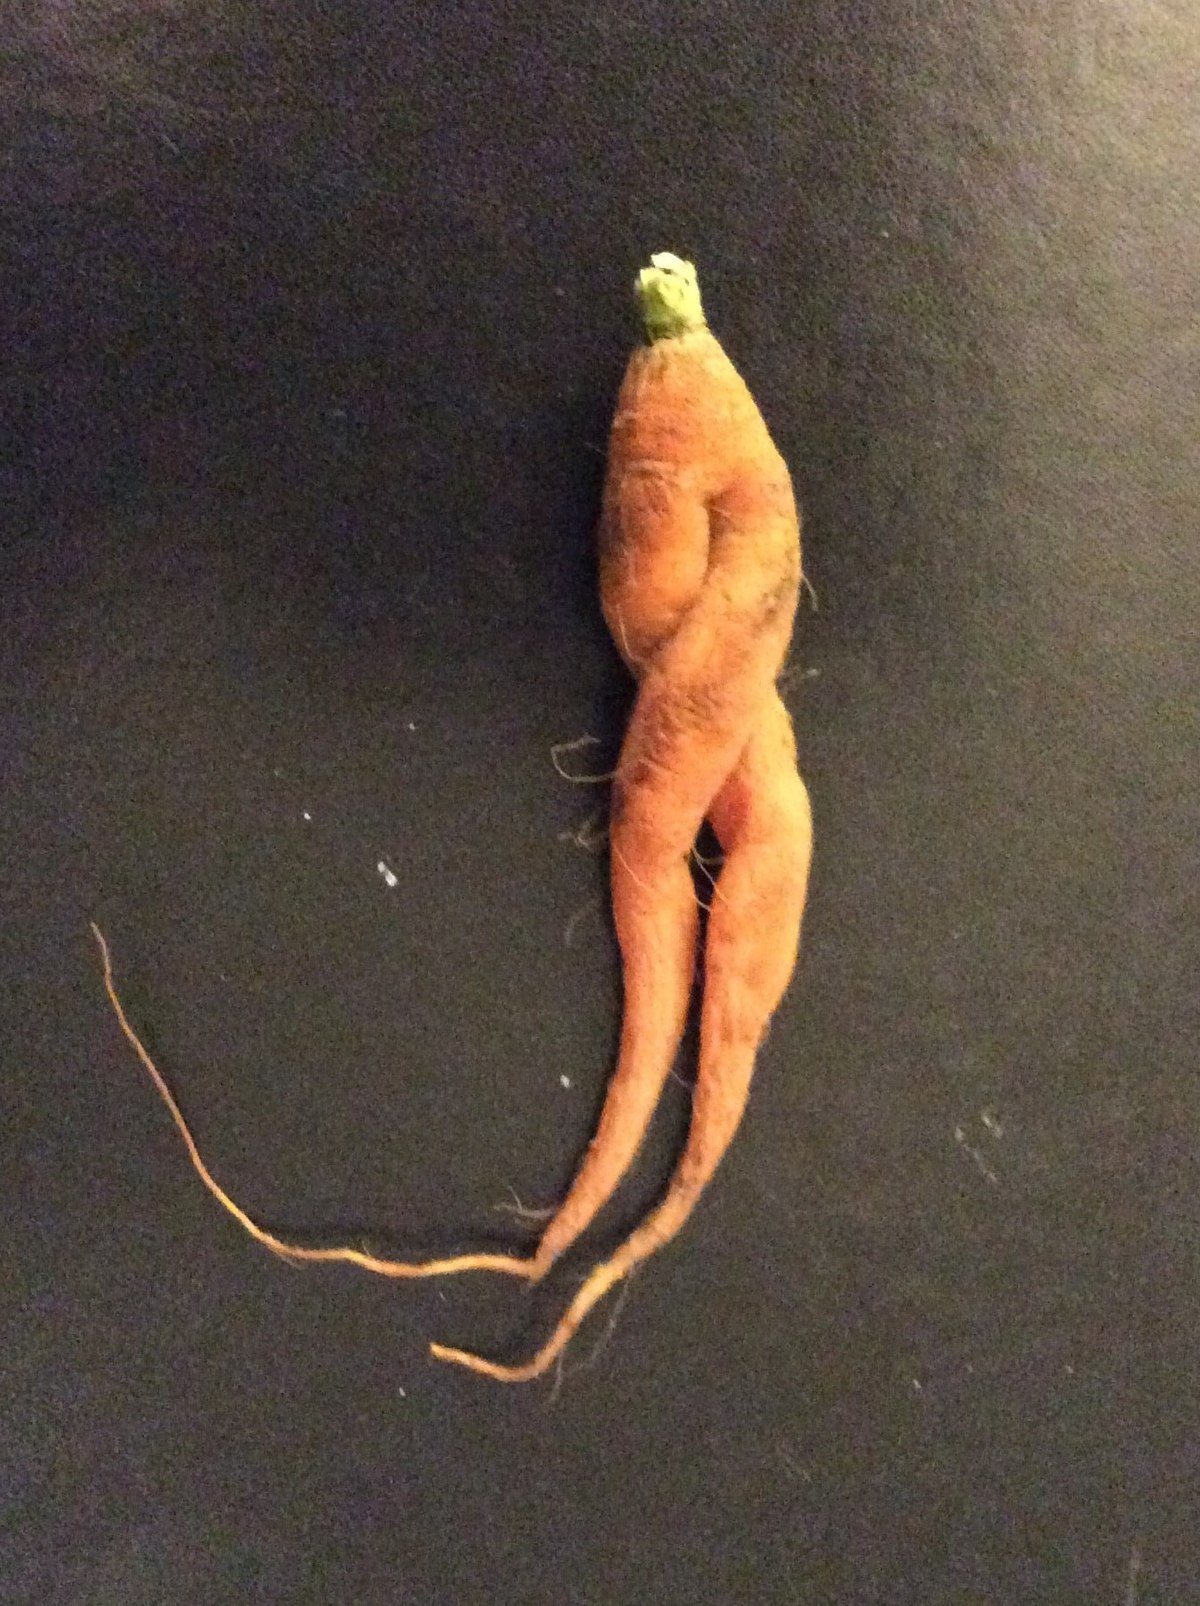 File:Carrot legs.jpg - Wikipedia